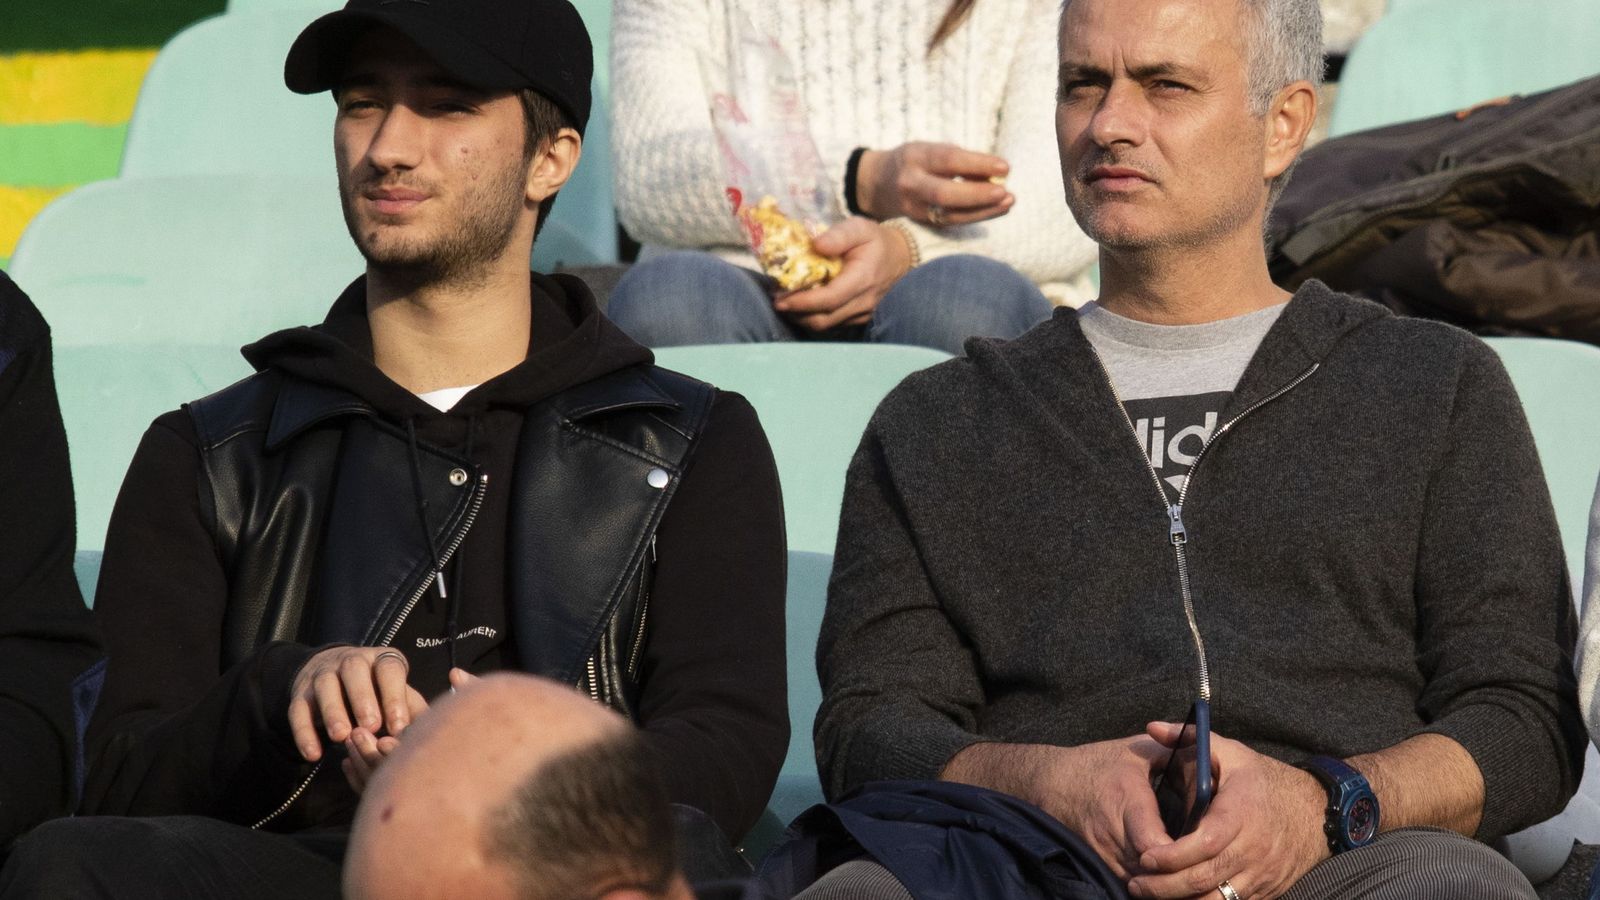 Foto: Mourinho, junto a su hijo, presenciando un partido después de ser despedido del Manchester United. (Efe)